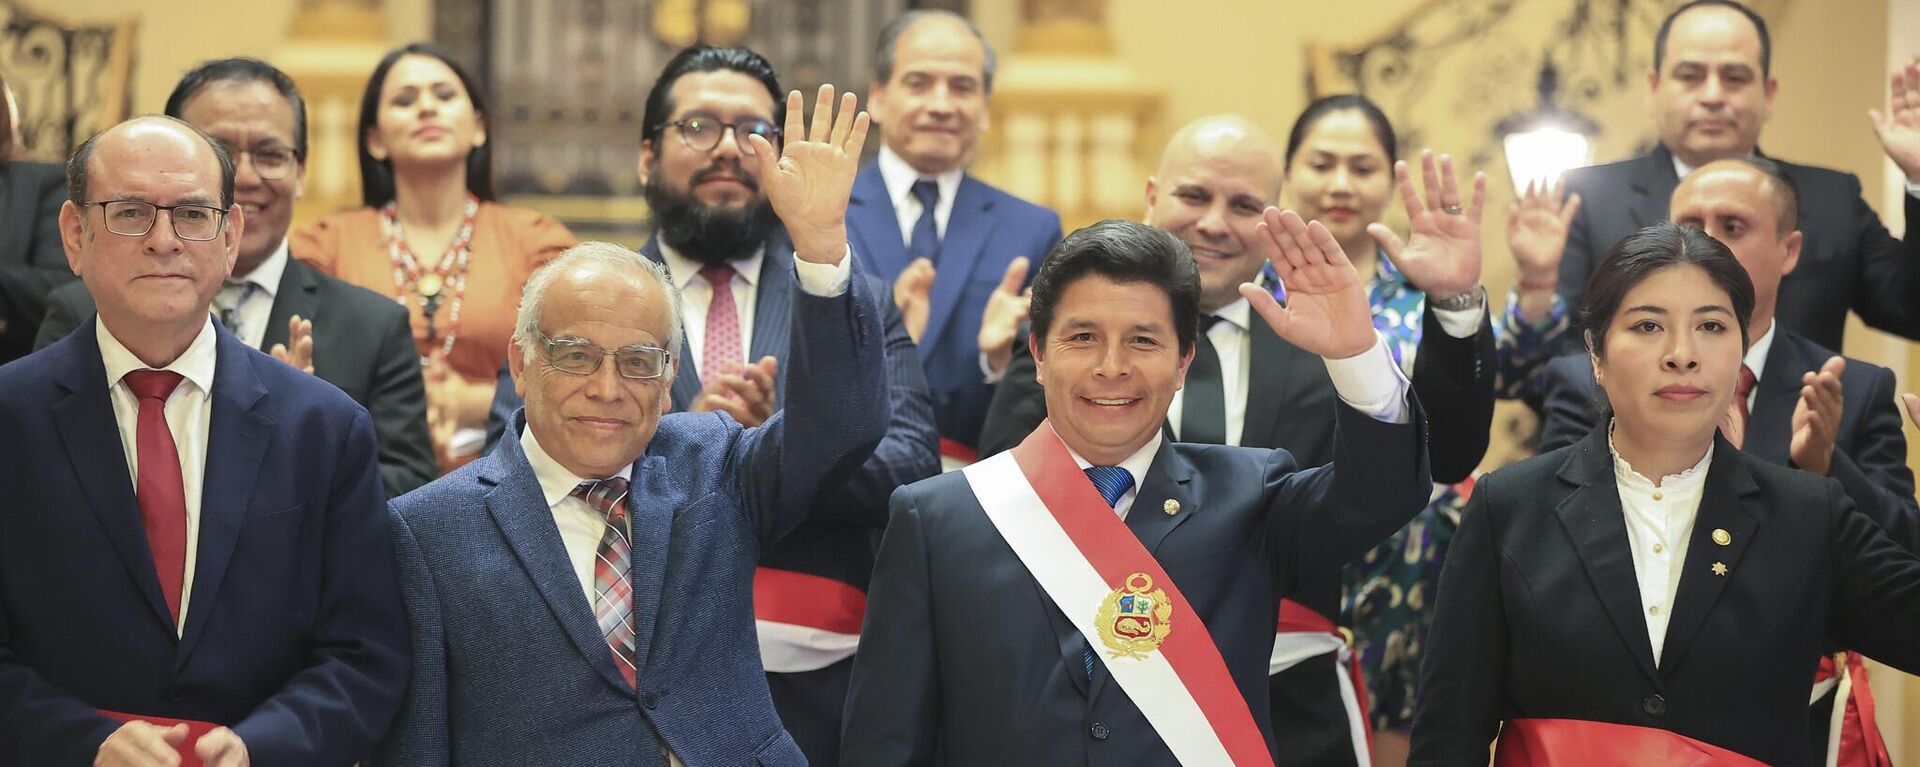 El presidente Pedro Castillo y el gabinete de ministros de Perú - Sputnik Mundo, 1920, 30.11.2022